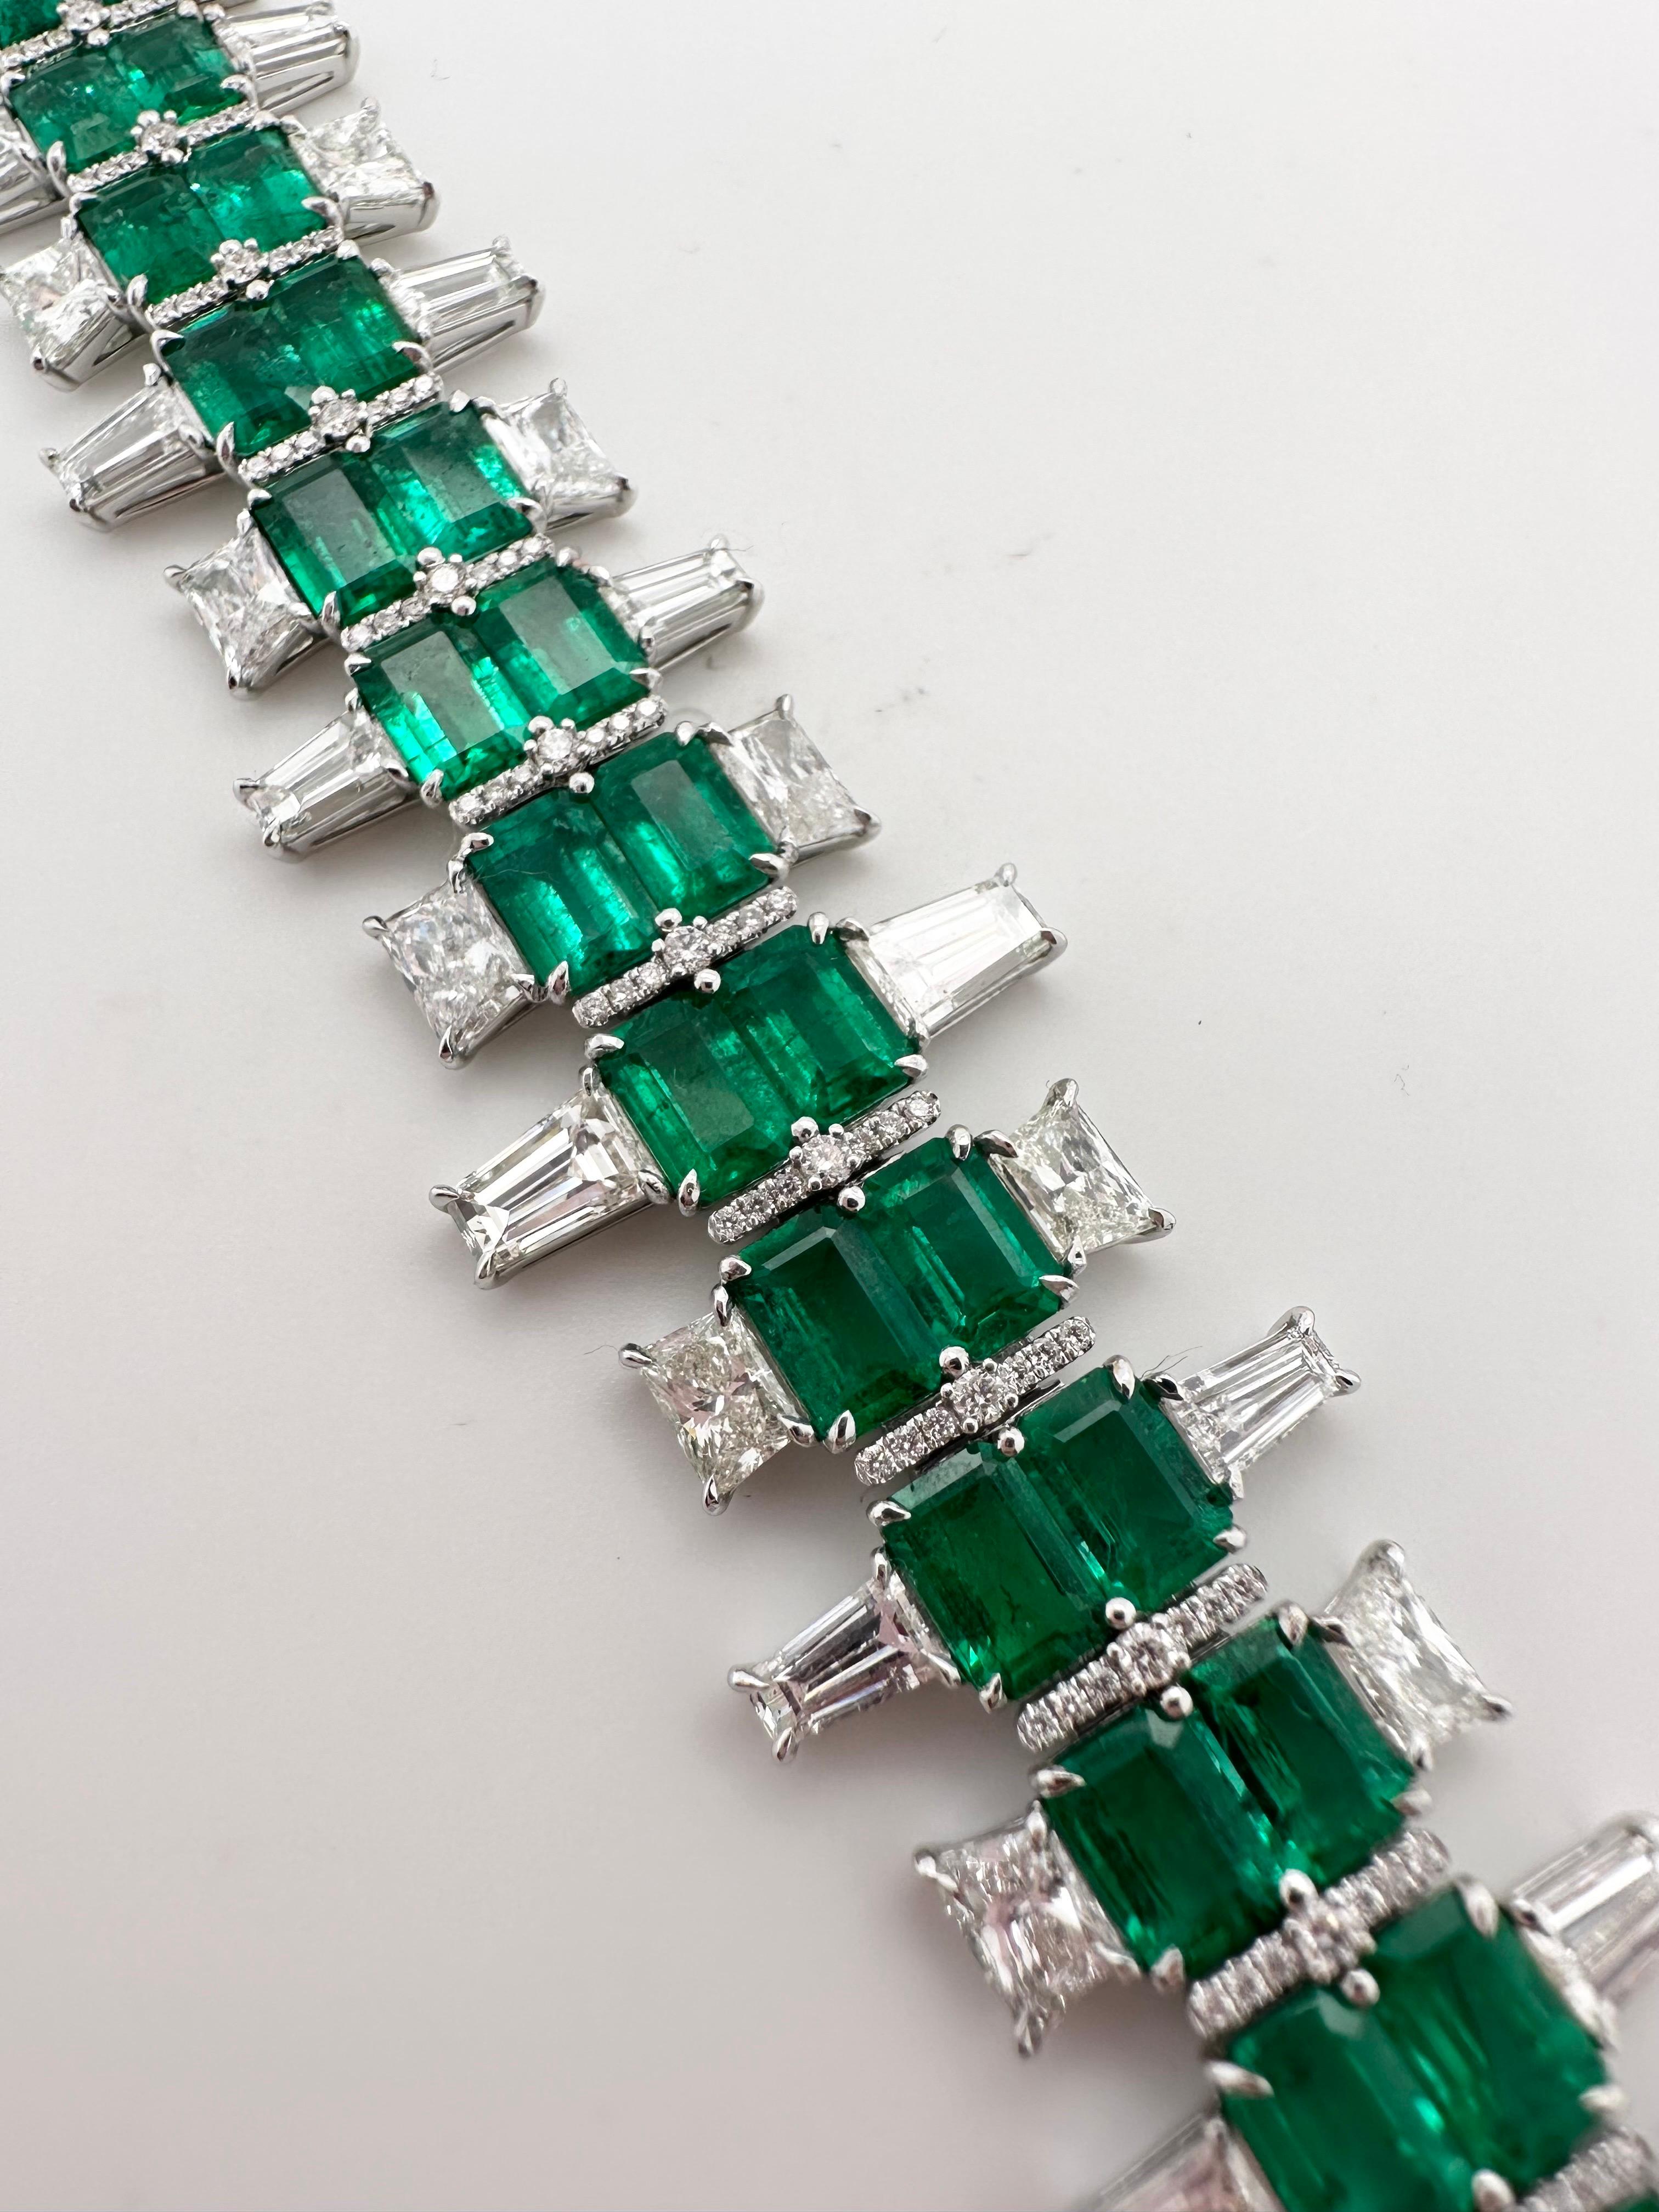 Rare bracelet assorti d'émeraudes et de diamants en or blanc 18KT. Le bracelet est de style Art déco, le créateur est connu. Les émeraudes assorties sont d'origine colombienne et sont d'une belle couleur vert bleuté. Le bracelet est réalisé avec un